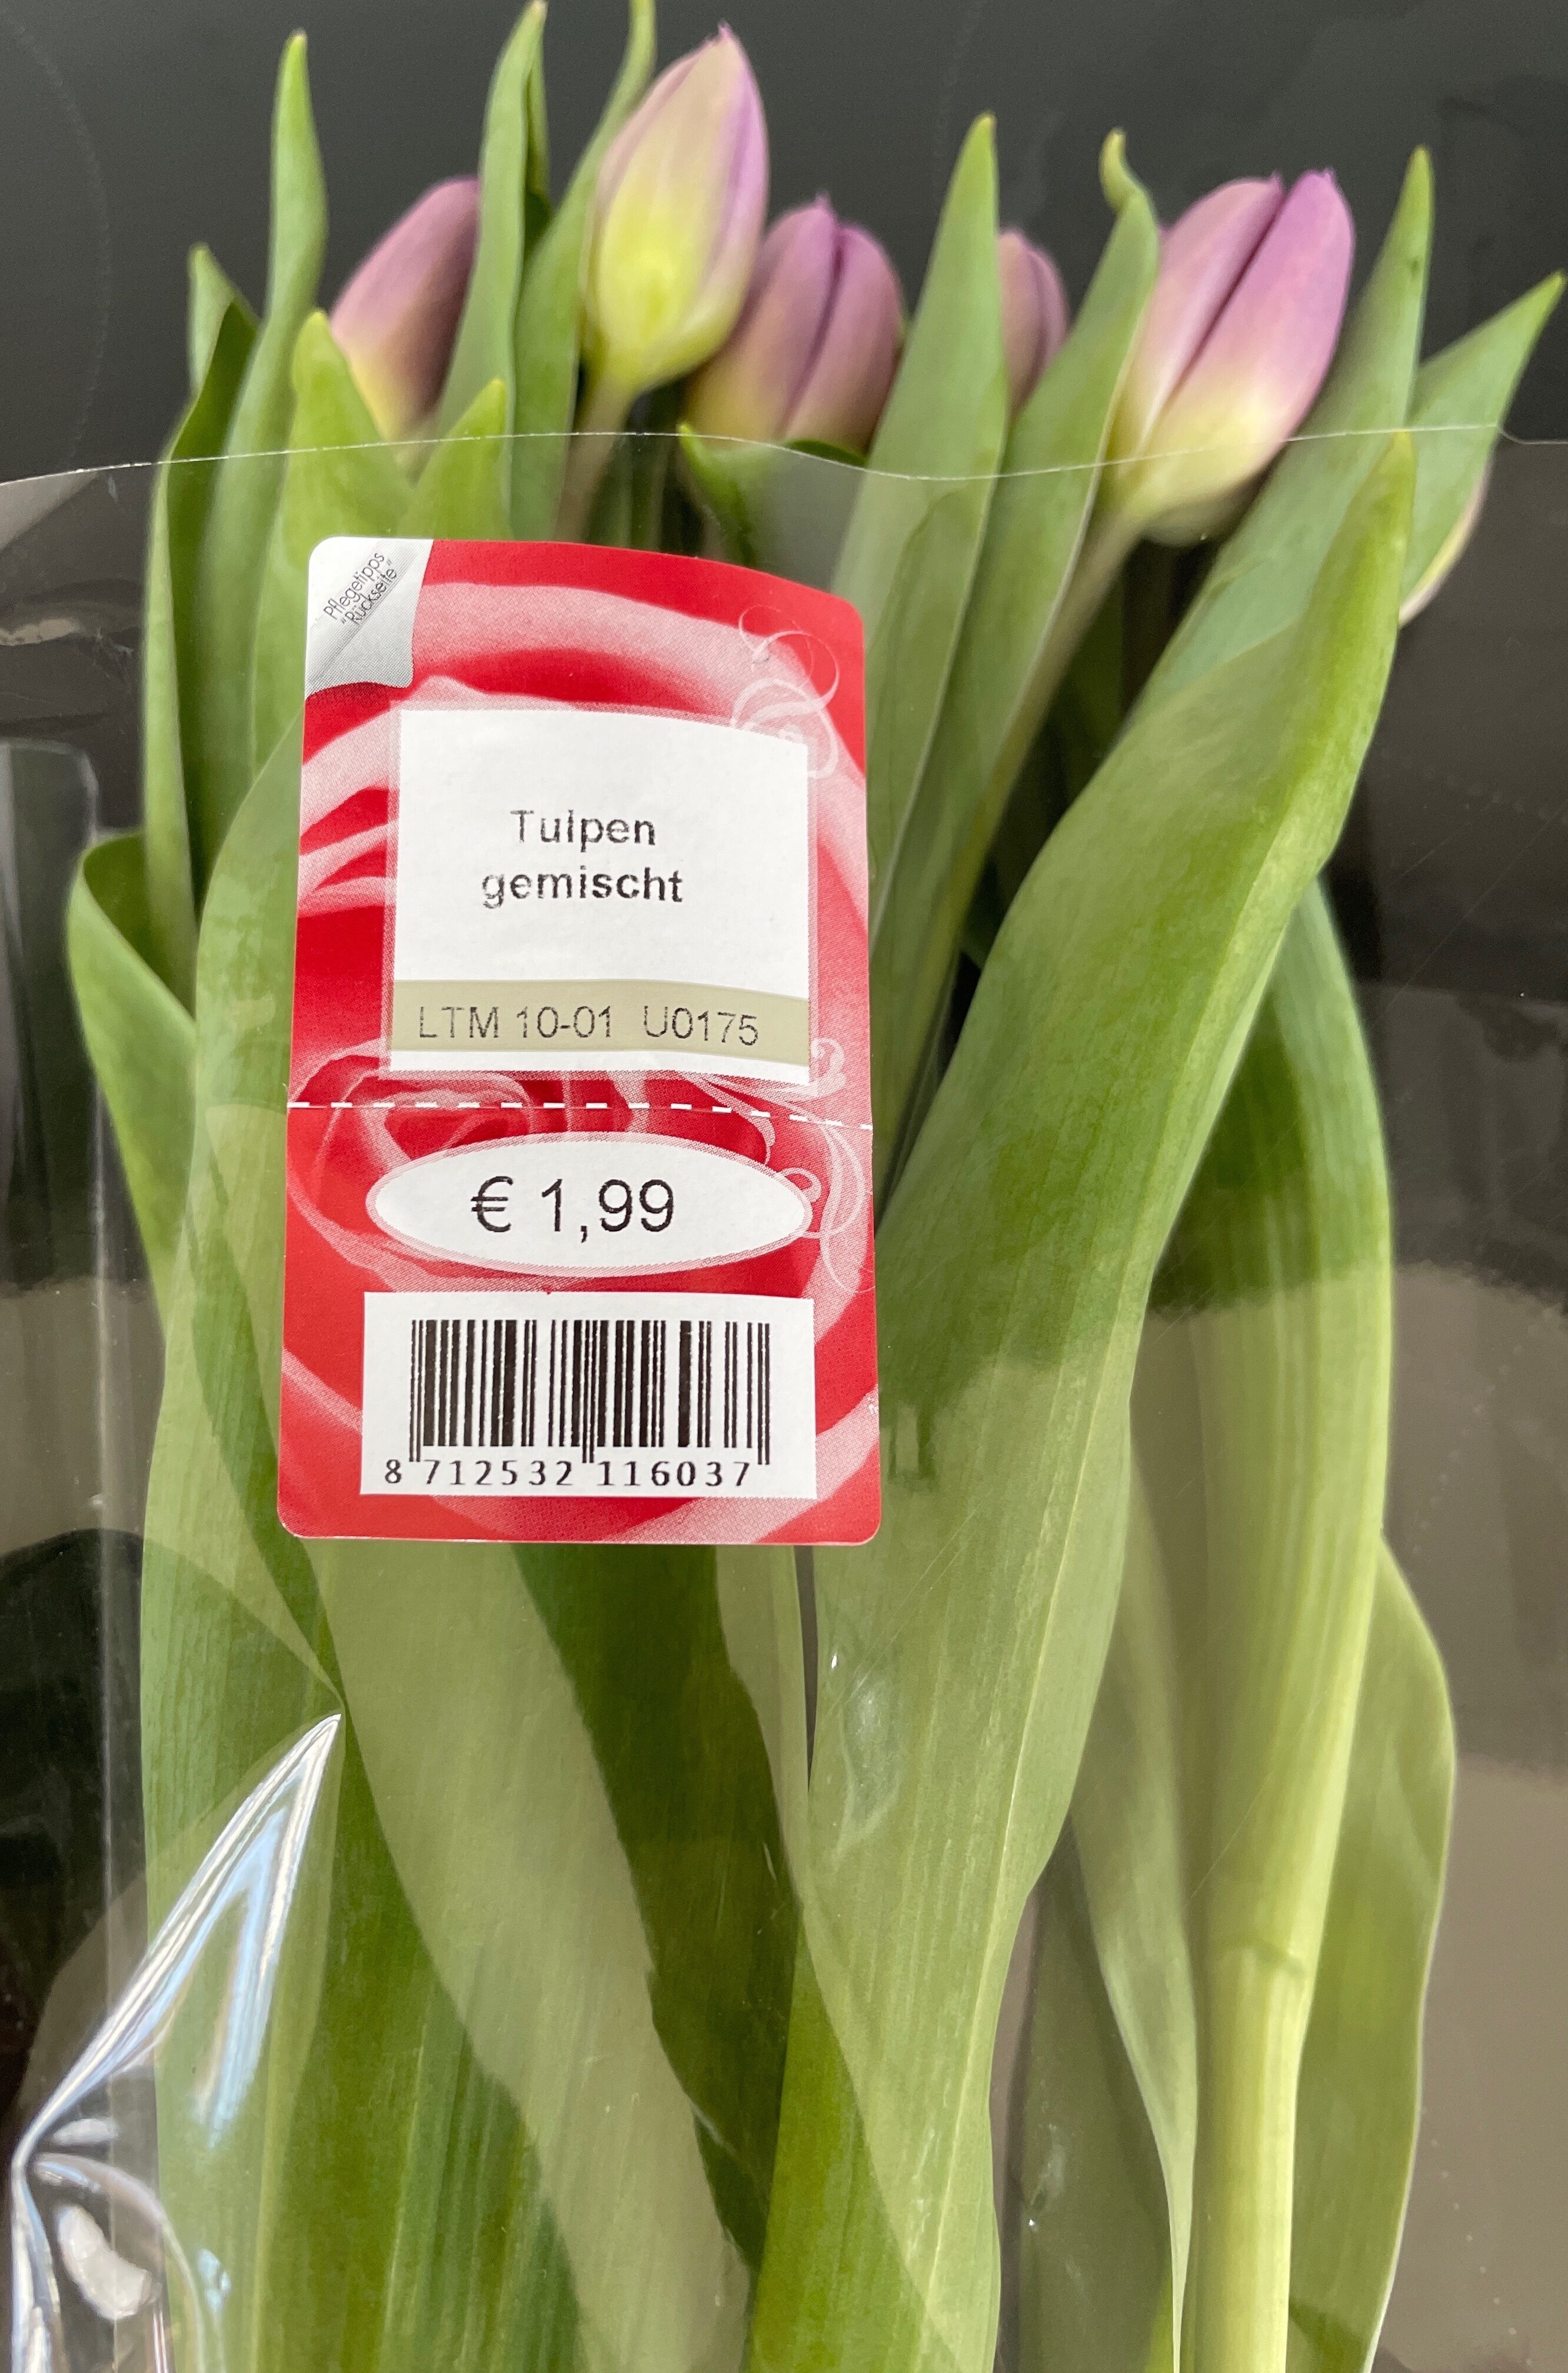 Tulpen gemischt - Product - de